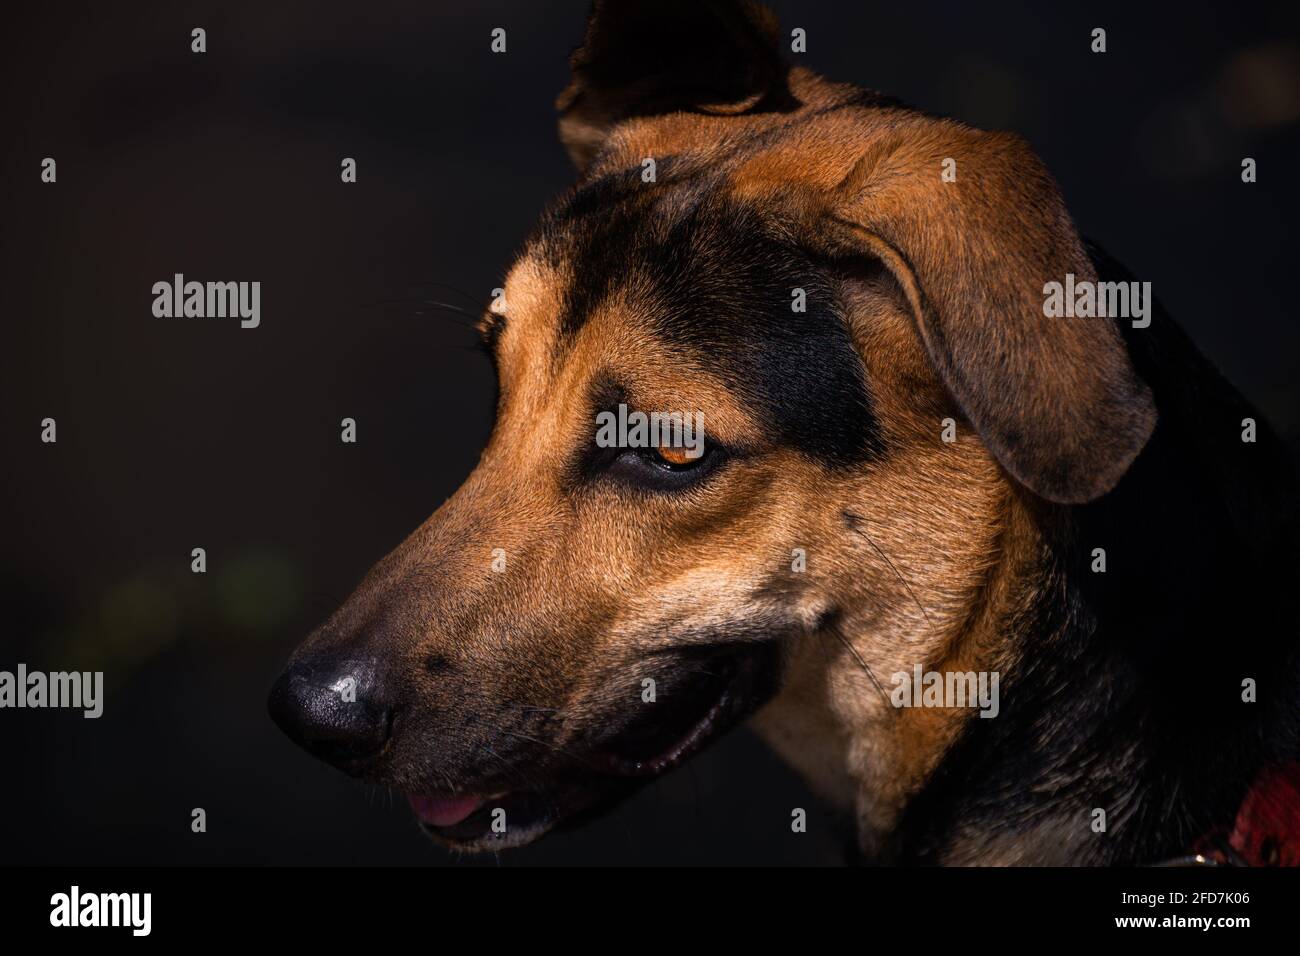 Junge deutsche Schäferhunde sehen sich einer Nahaufnahme von Porträtaufnahmen gegenüber. Einige Muttermale auf dem Gesicht des Hundes. Loyales und süßes Wegbegleiter-Konzeptfoto. Stockfoto